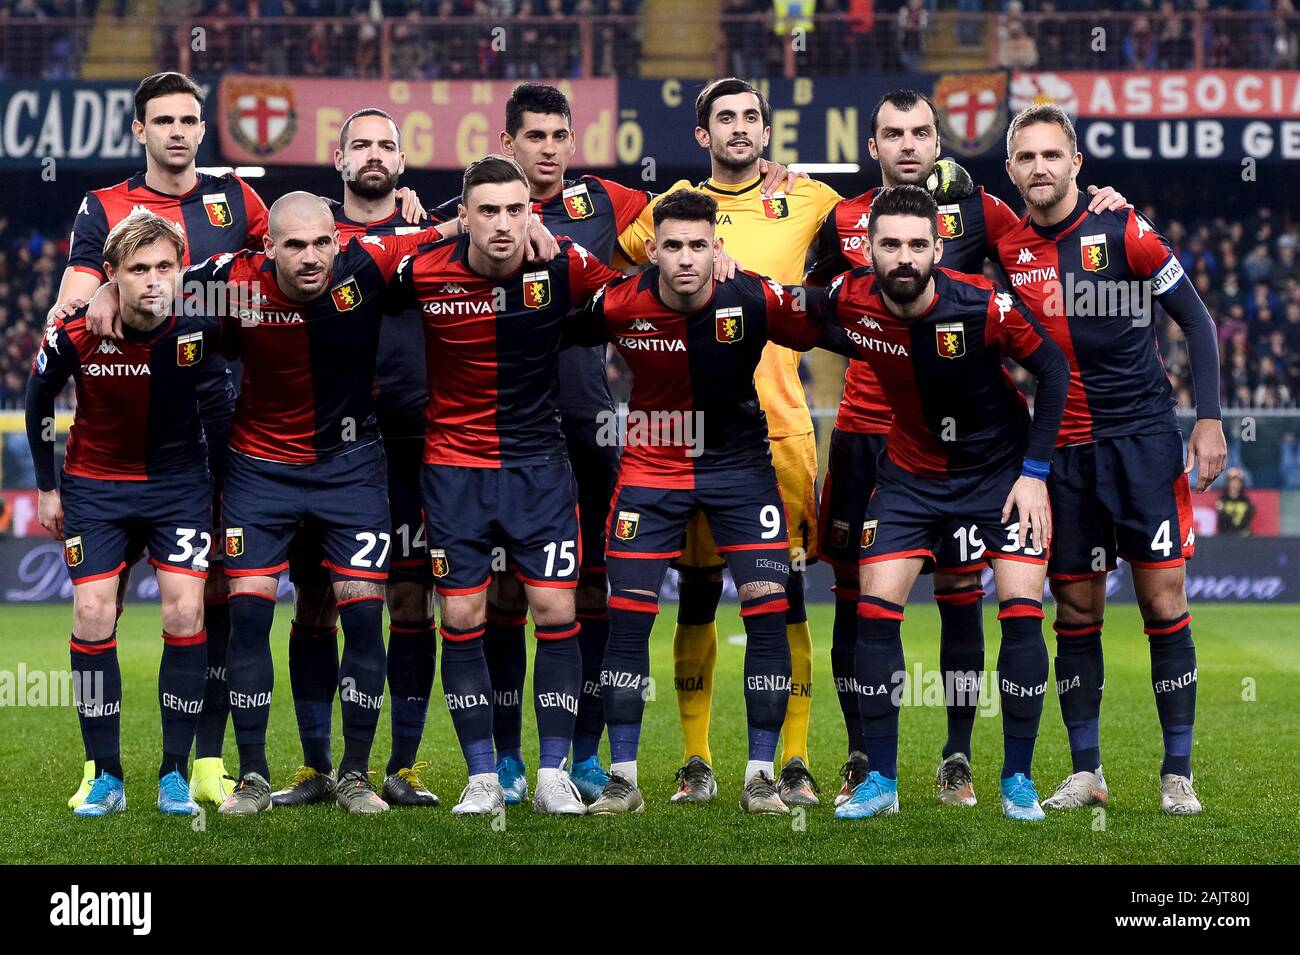 Genua, Italien - 05 Januar, 2020: die Spieler von Genua CFC posieren für  ein Foto des Teams vor der Serie ein Fußballspiel zwischen Genua CFC und US  Sassuolo. Genua CFC gewann 2-1